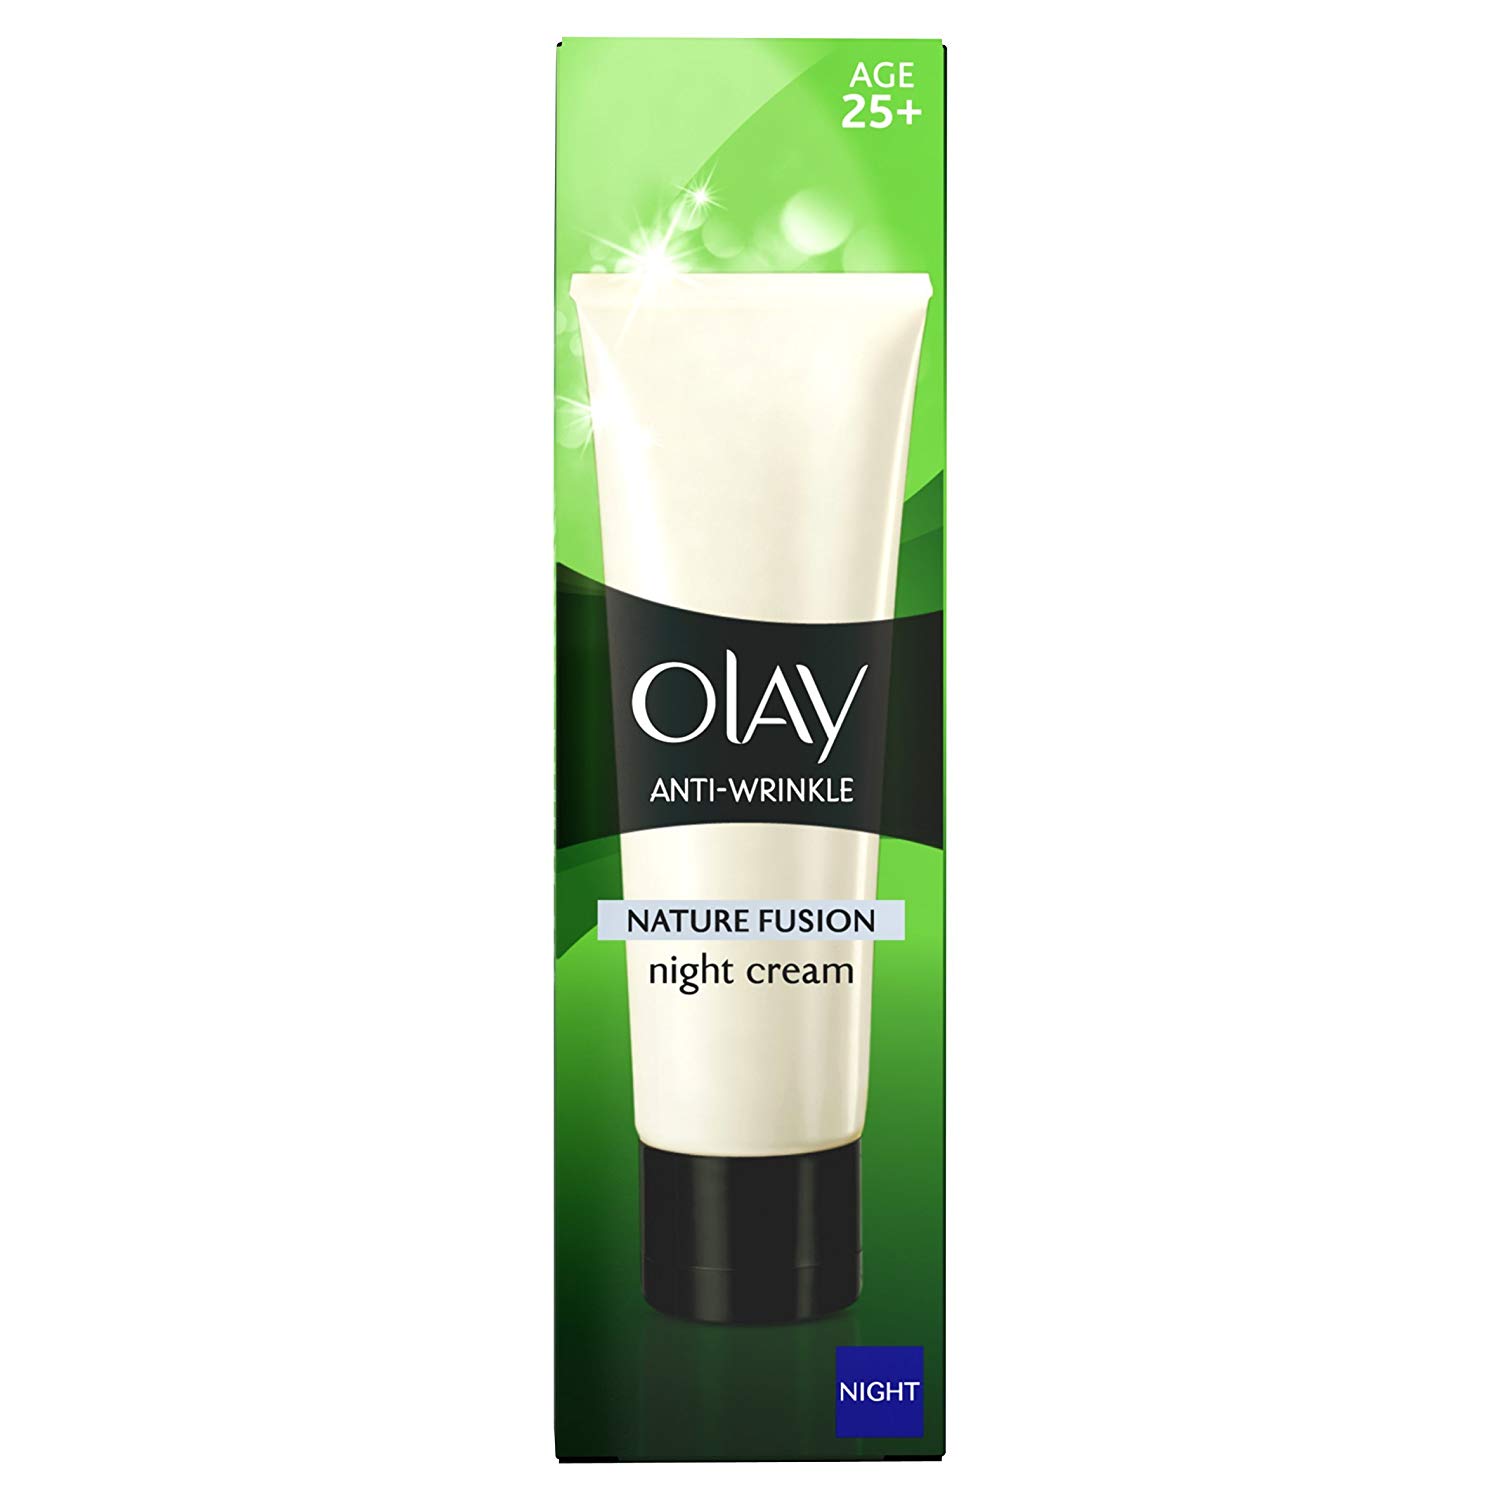 Olay Anti-Wrinkle Night Cream Tube - 50 ml: Amazon.co.uk: Beauty